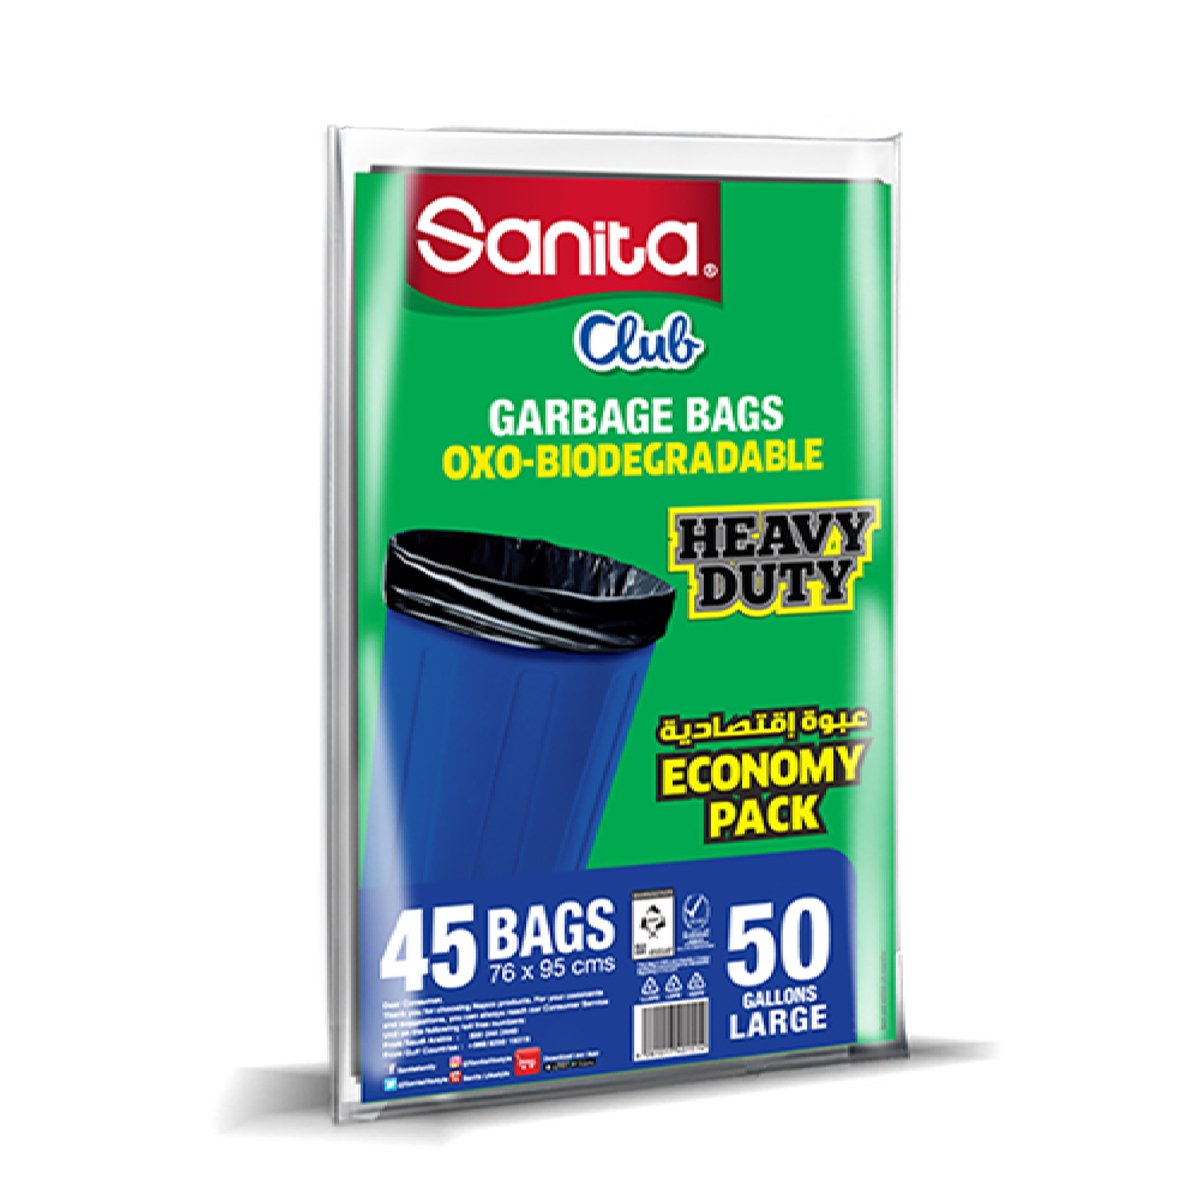 اشتري قم بشراء سانيتا كلوب أكياس نفايات سميكة كبيرة 50 جالون مقاس 76 × 95 سم 45 حبه Online at Best Price من الموقع - من لولو هايبر ماركت Garbage Bags في السعودية